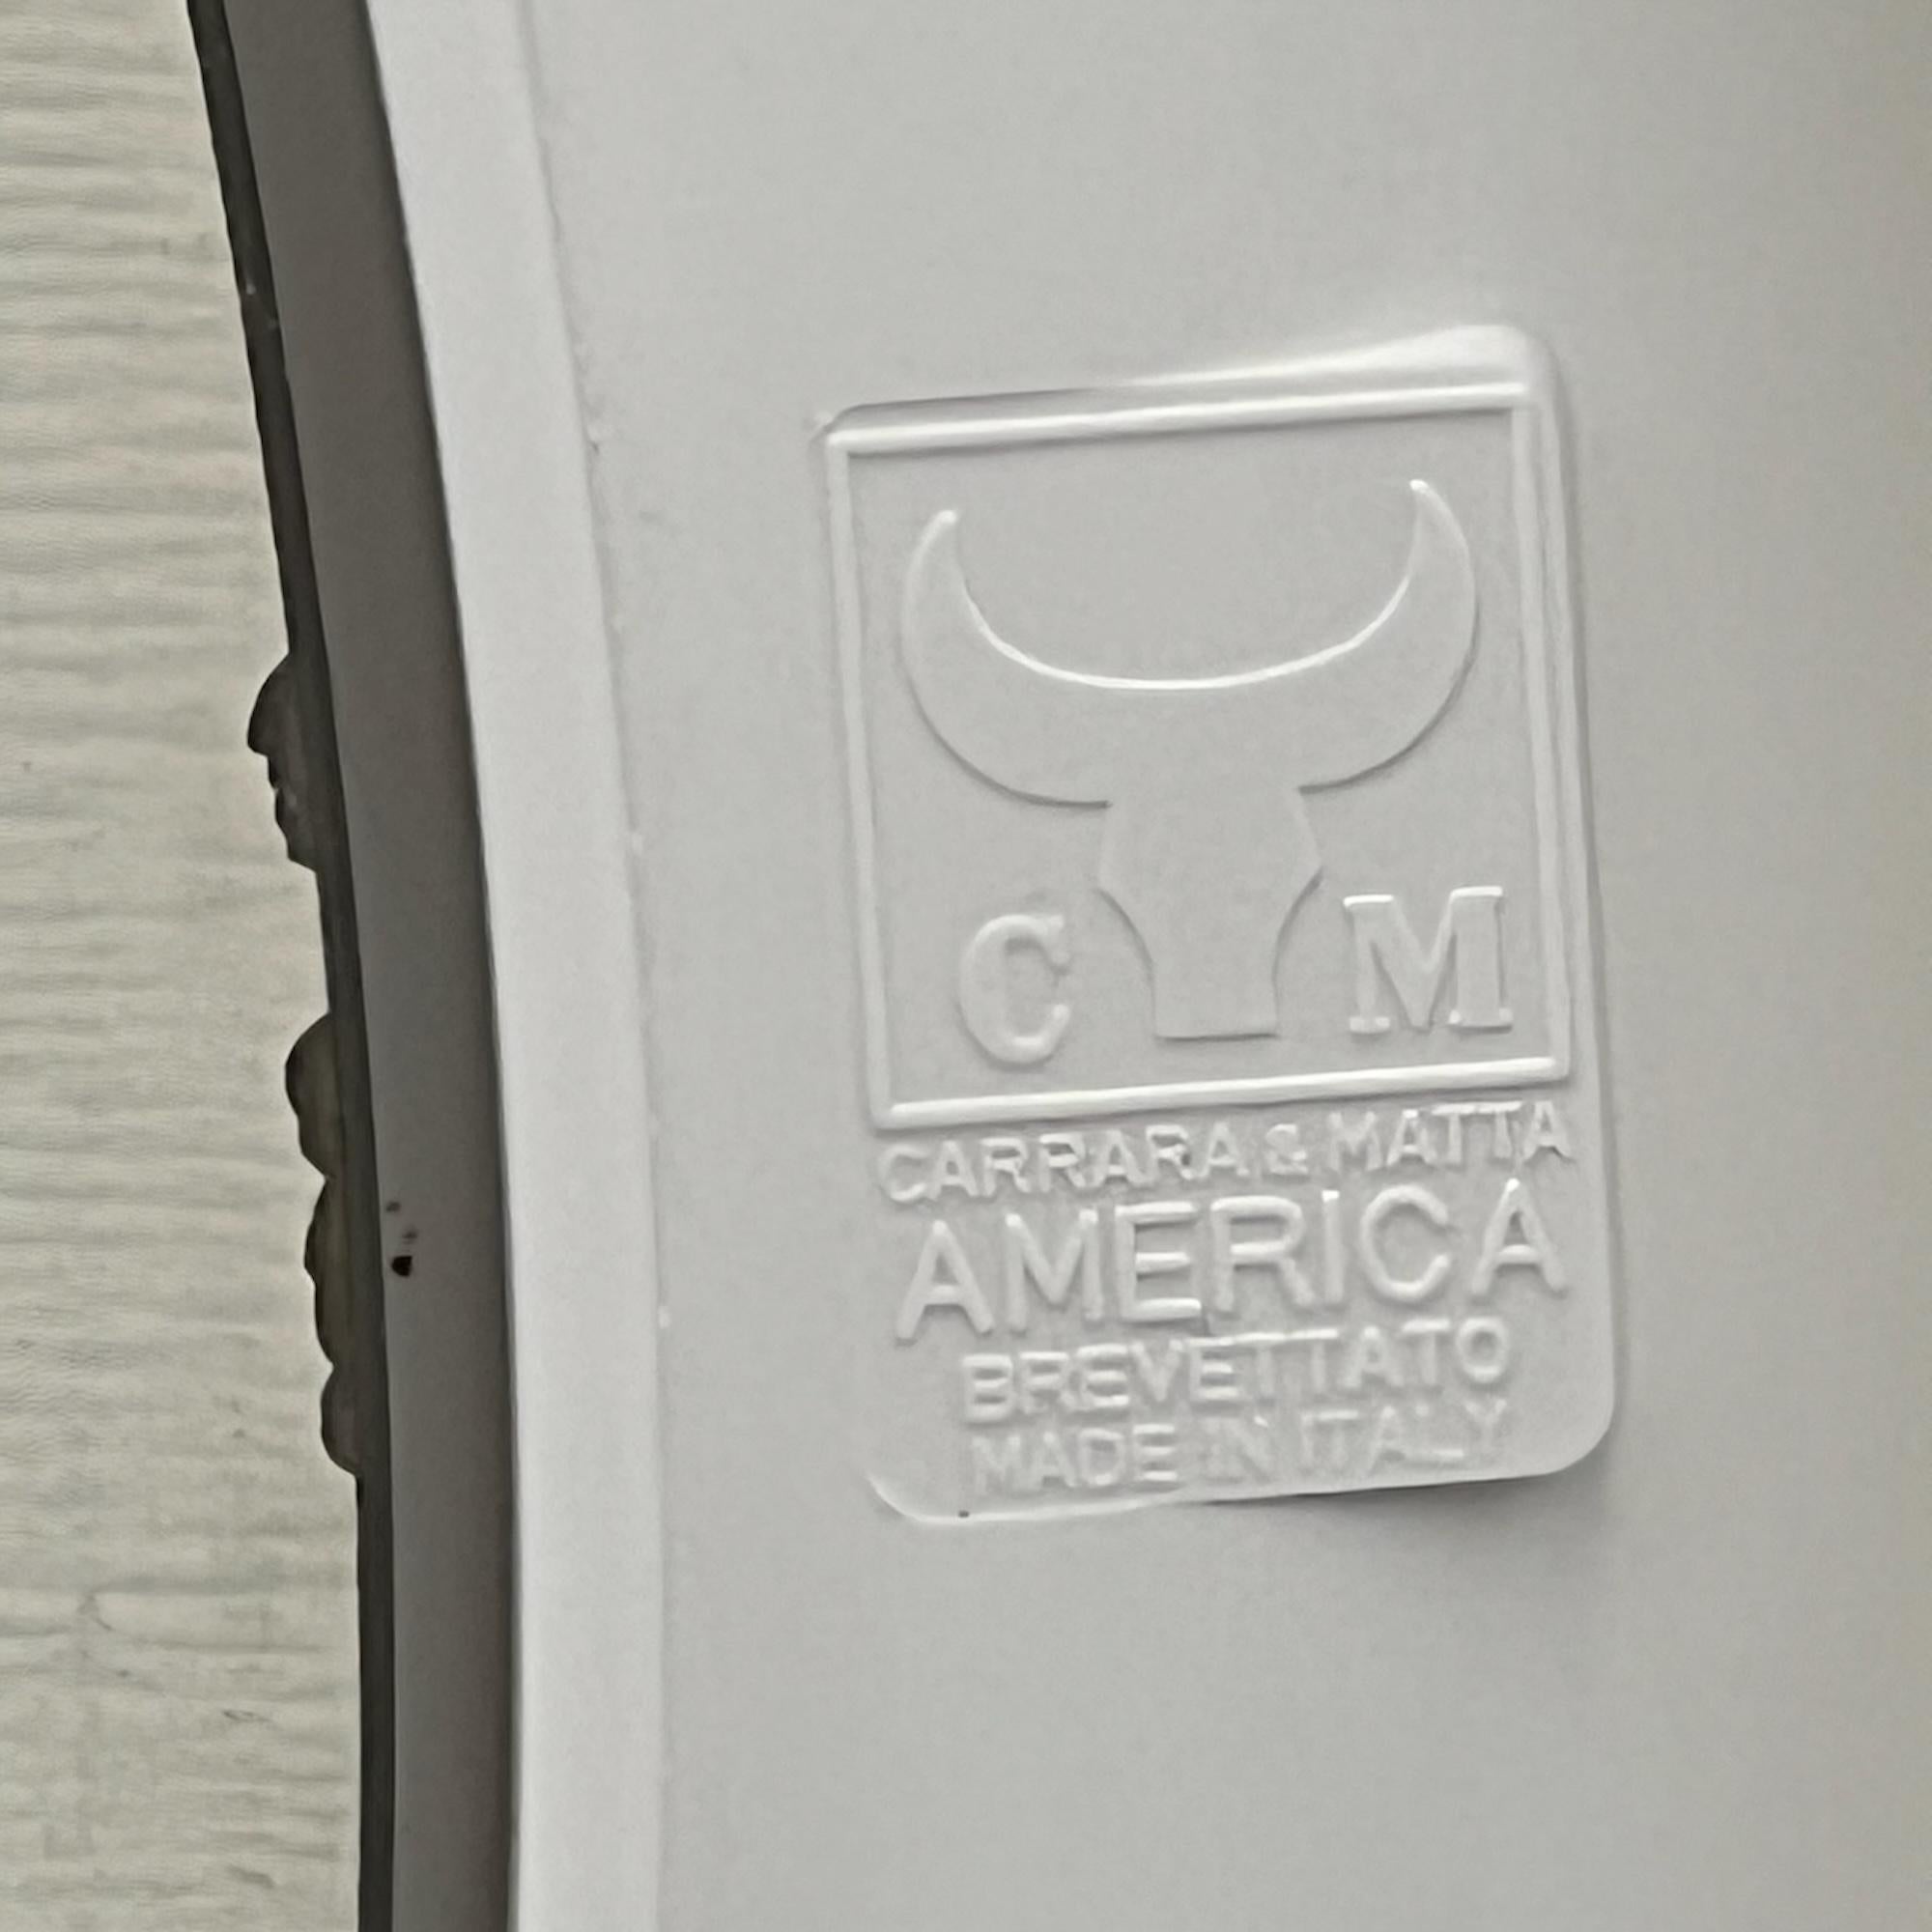 Space Age Carrara & Matta 'America' Wall Mirror in off-white - 70s Patent Bakelite Design